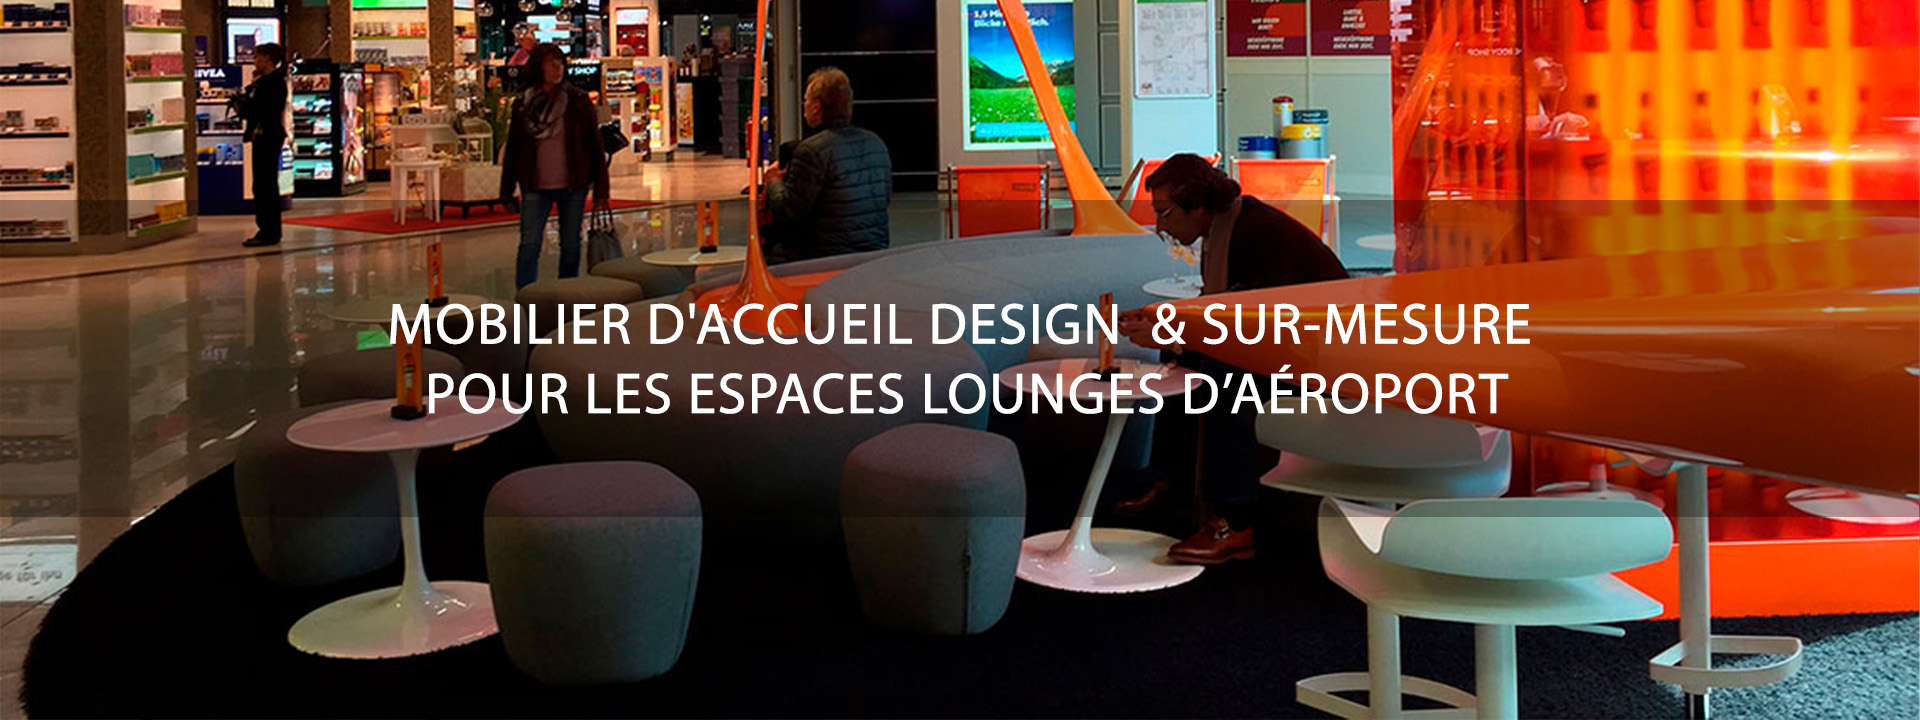 mobilier d'accueil espace lounge aeroport